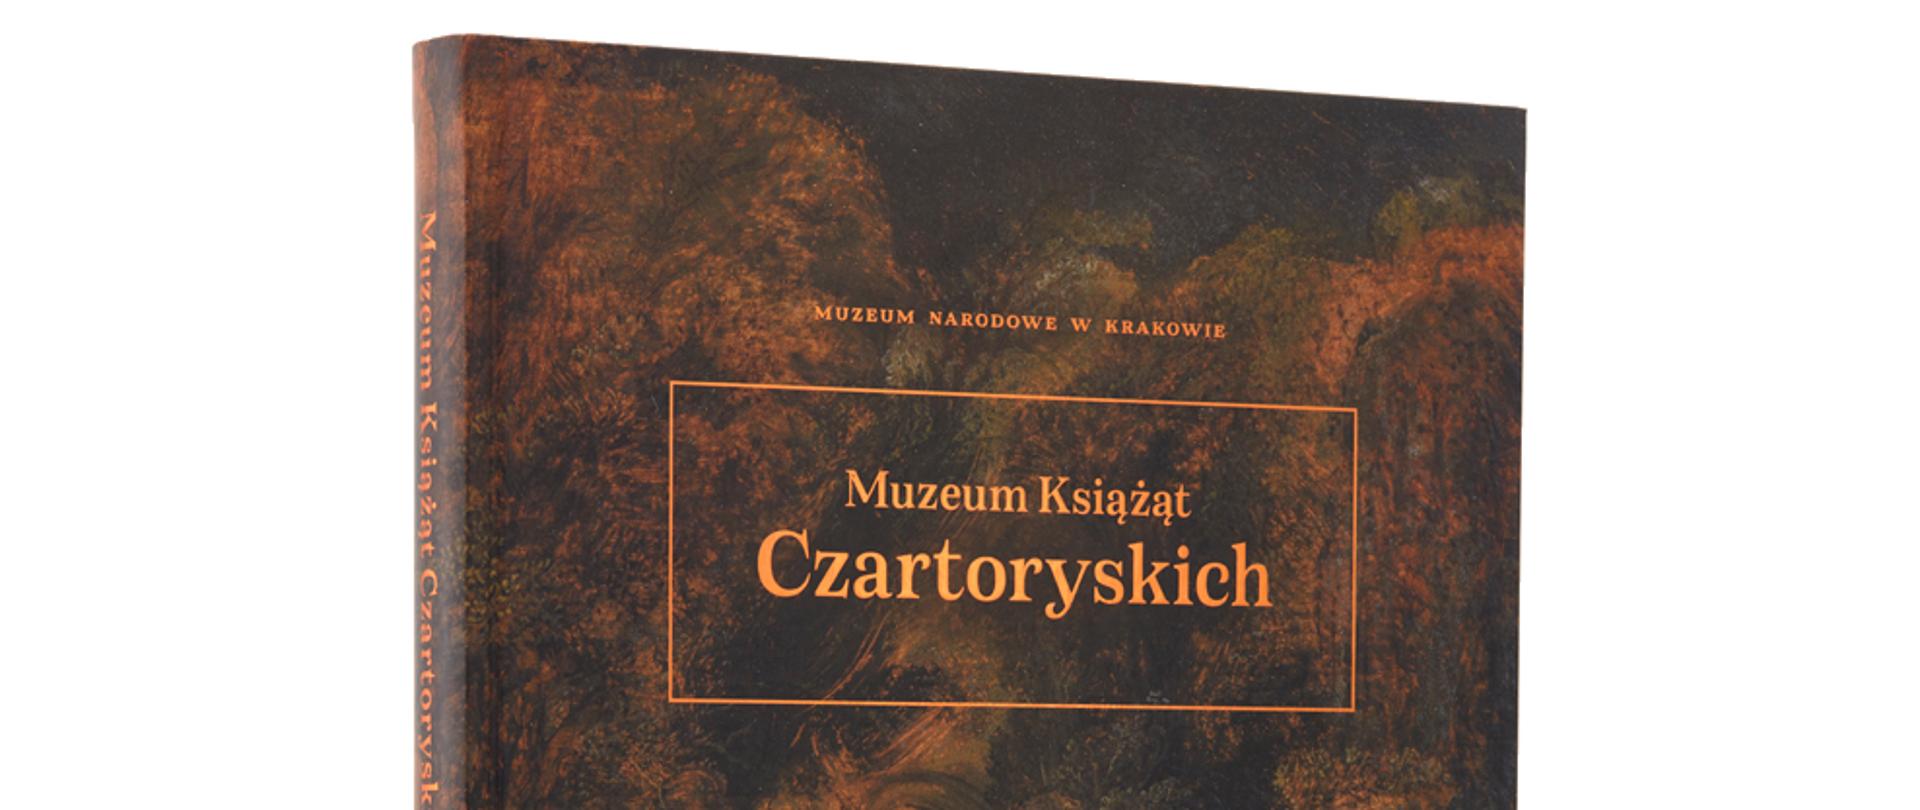 Muzeum Książąt Czartoryskich - katalog_fot archiwum mnk